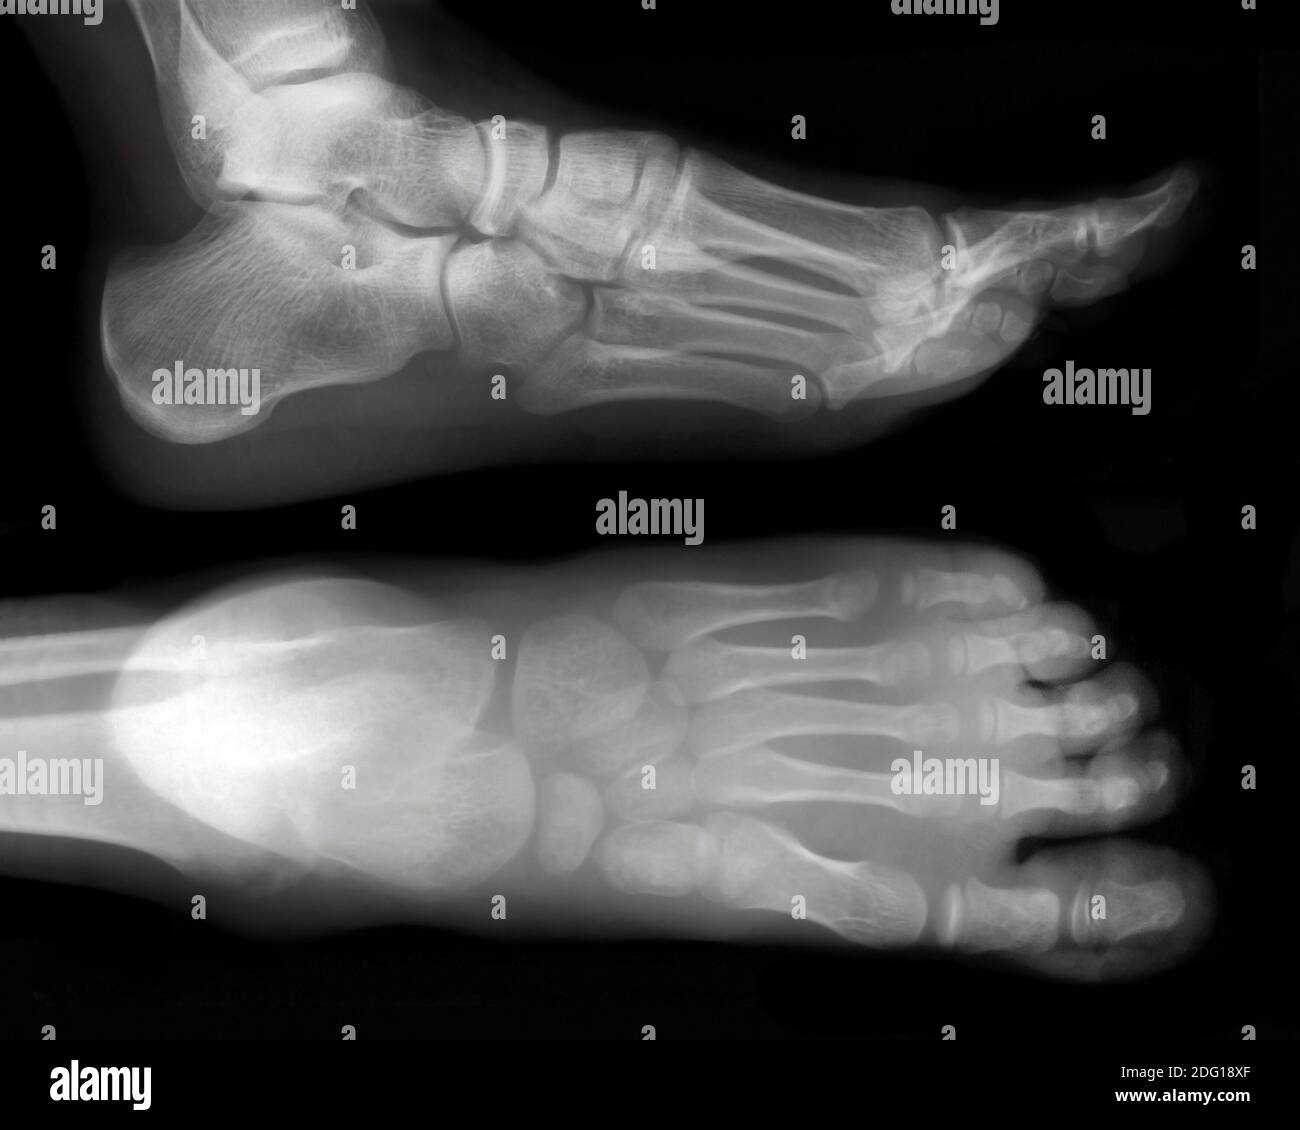 Foot-X-Ray cutout Stock Photo